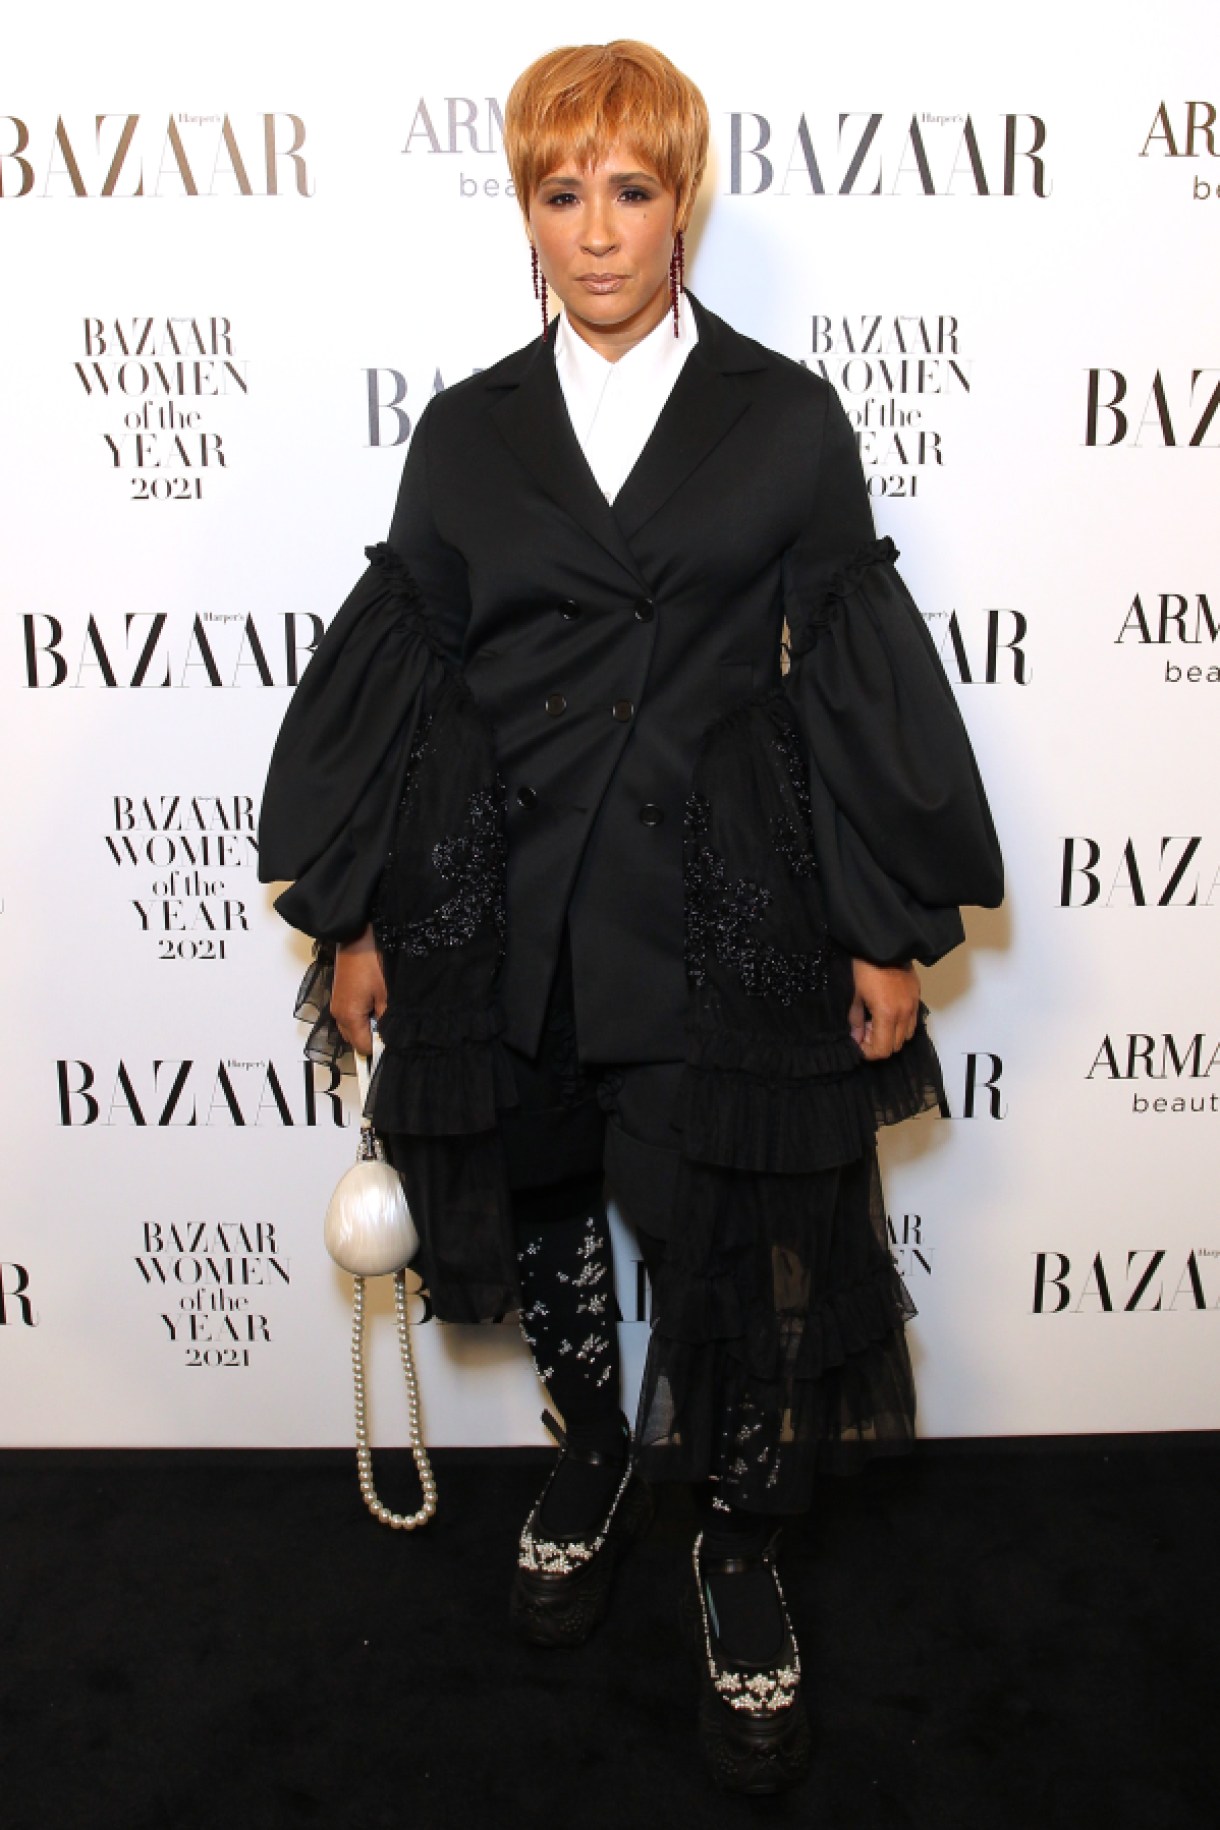 LONDON, ENGLAND - NOVEMBER 02:  Golda Rosheuvel attends the Harper's Bazaar Women of the Year Awards 2021, in partnership with Armani Beauty, at Claridge's Hotel on November 2, 2021 in London, England. (Photo by David M. Benett/Dave Benett/Getty Images for Harper's Bazaar)